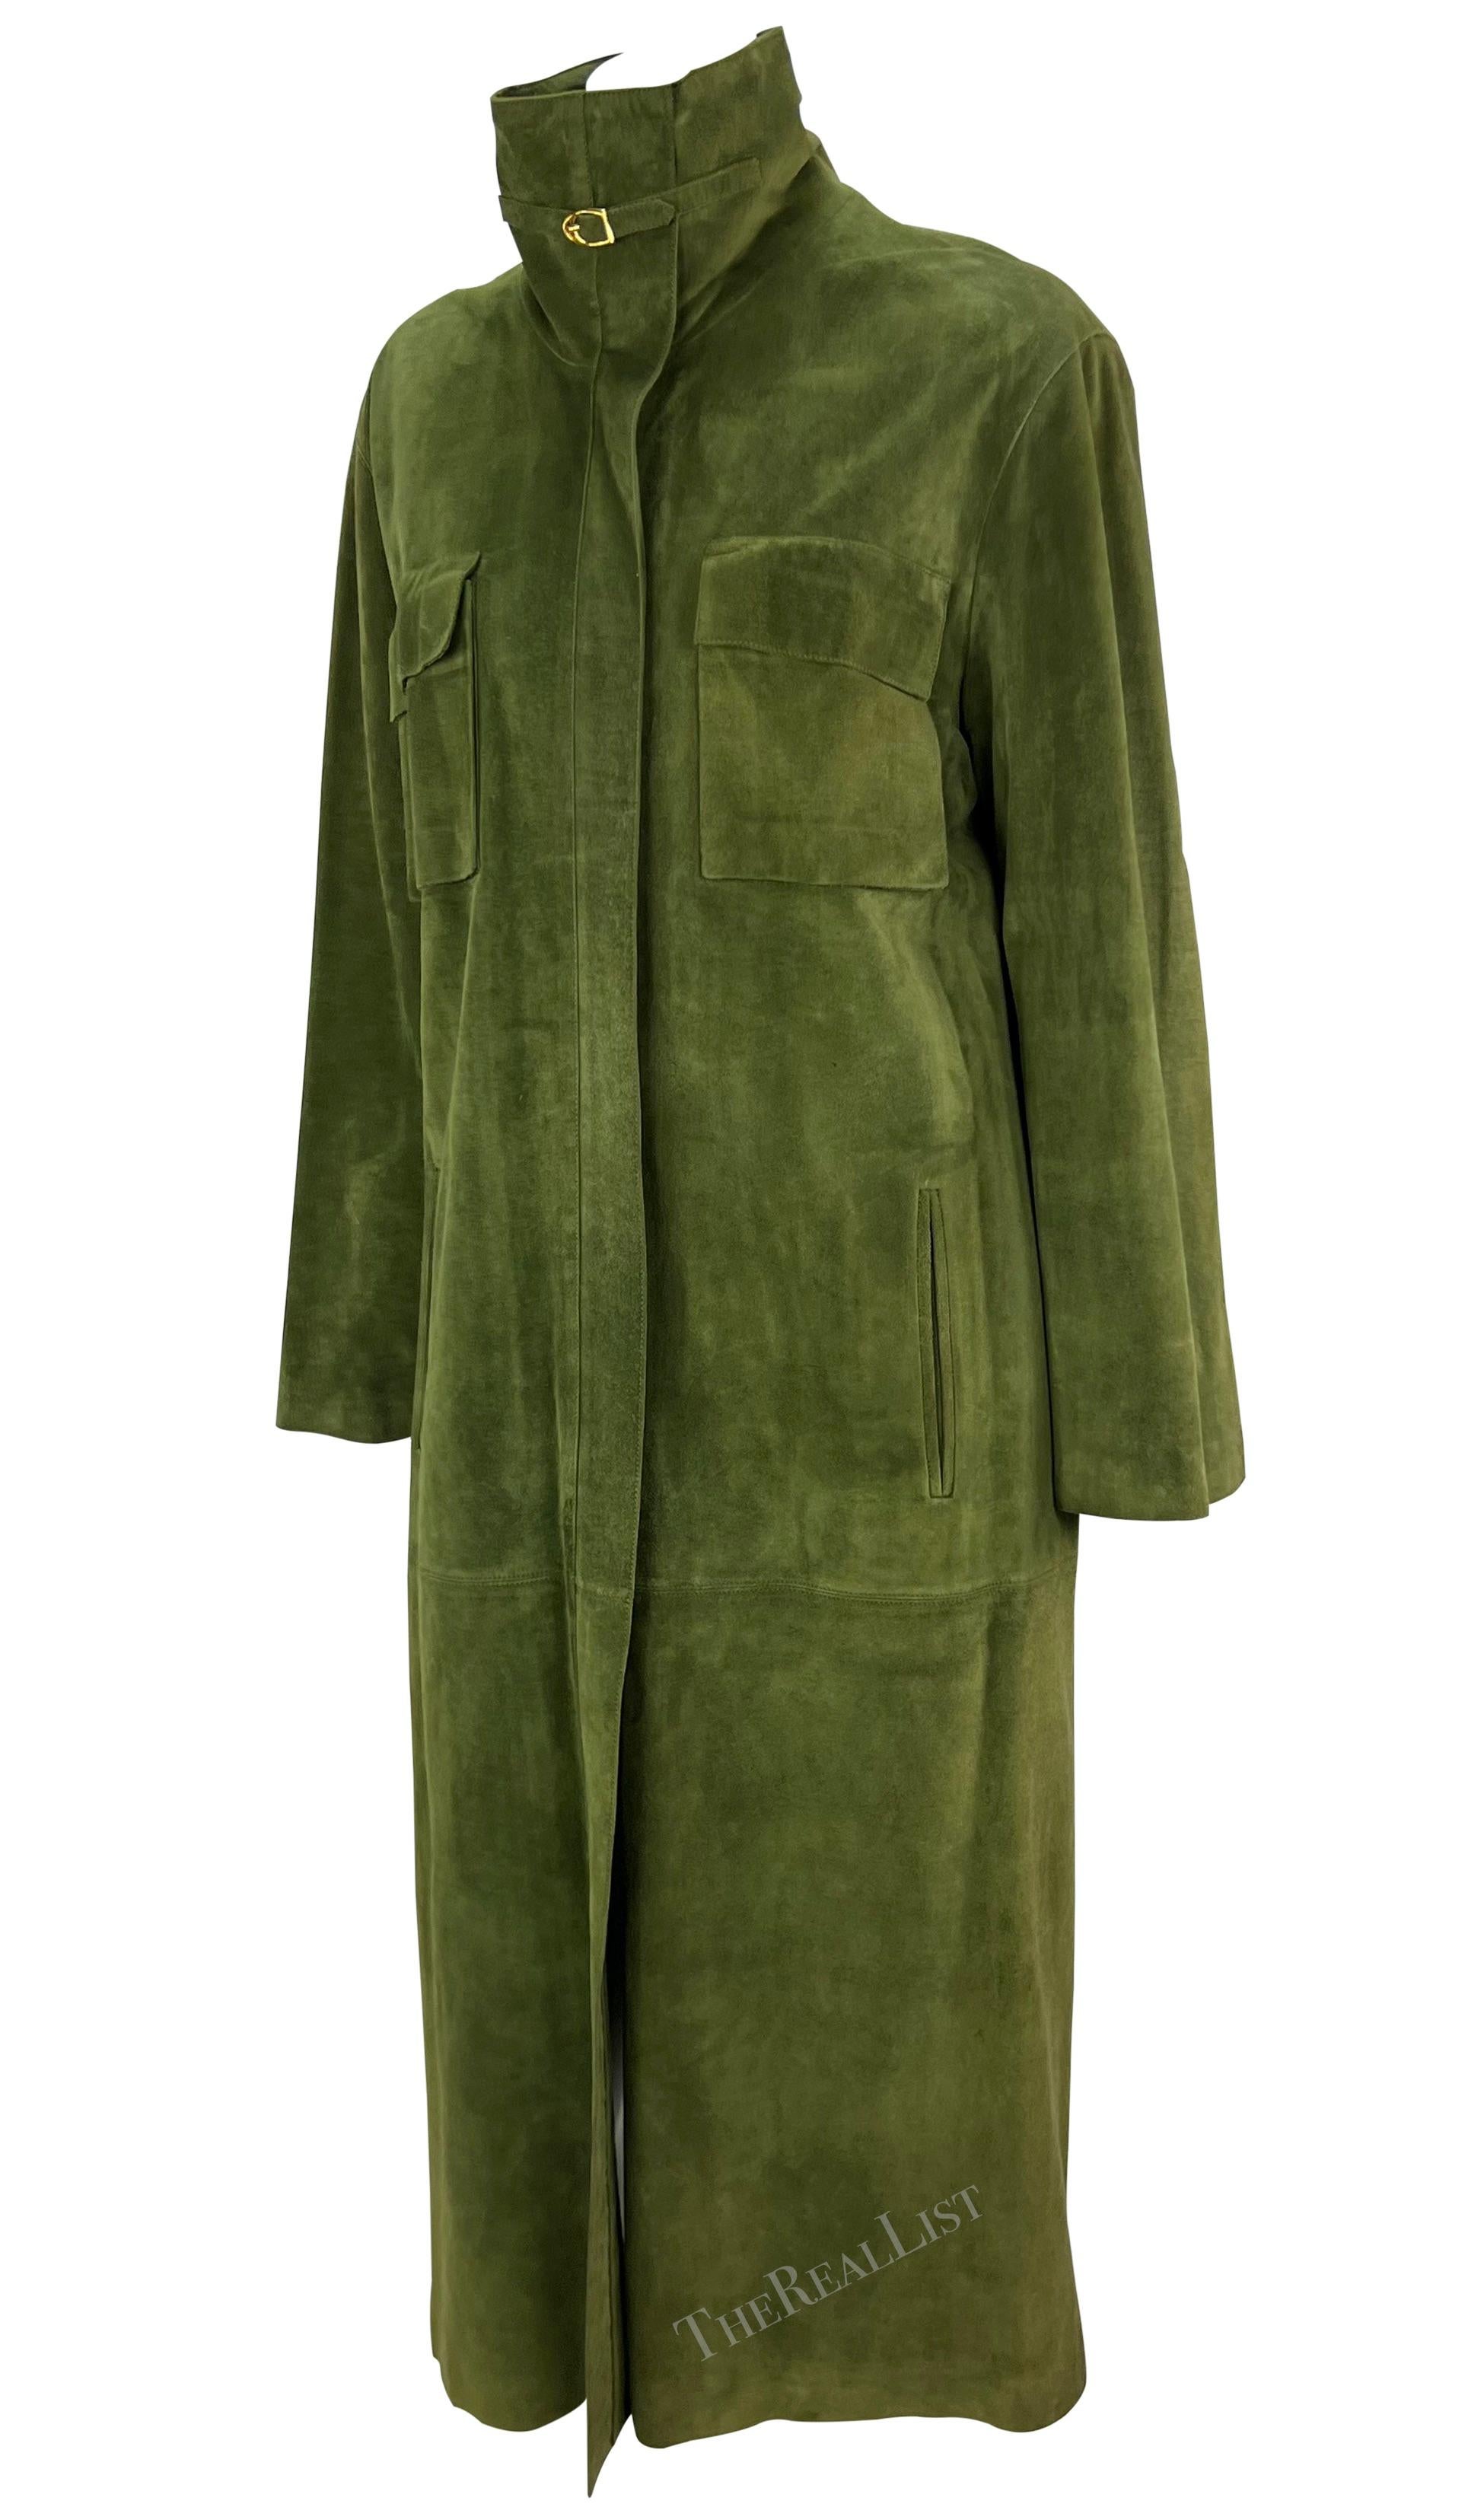 Wir präsentieren einen atemberaubenden Gucci Trenchcoat aus moosgrünem Wildleder. Dieser echte Vintage-Mantel aus den 1970er Jahren ist komplett aus weichem, moosgrünem Wildleder gefertigt. Dieser Mantel in Übergröße hat einen verdeckten